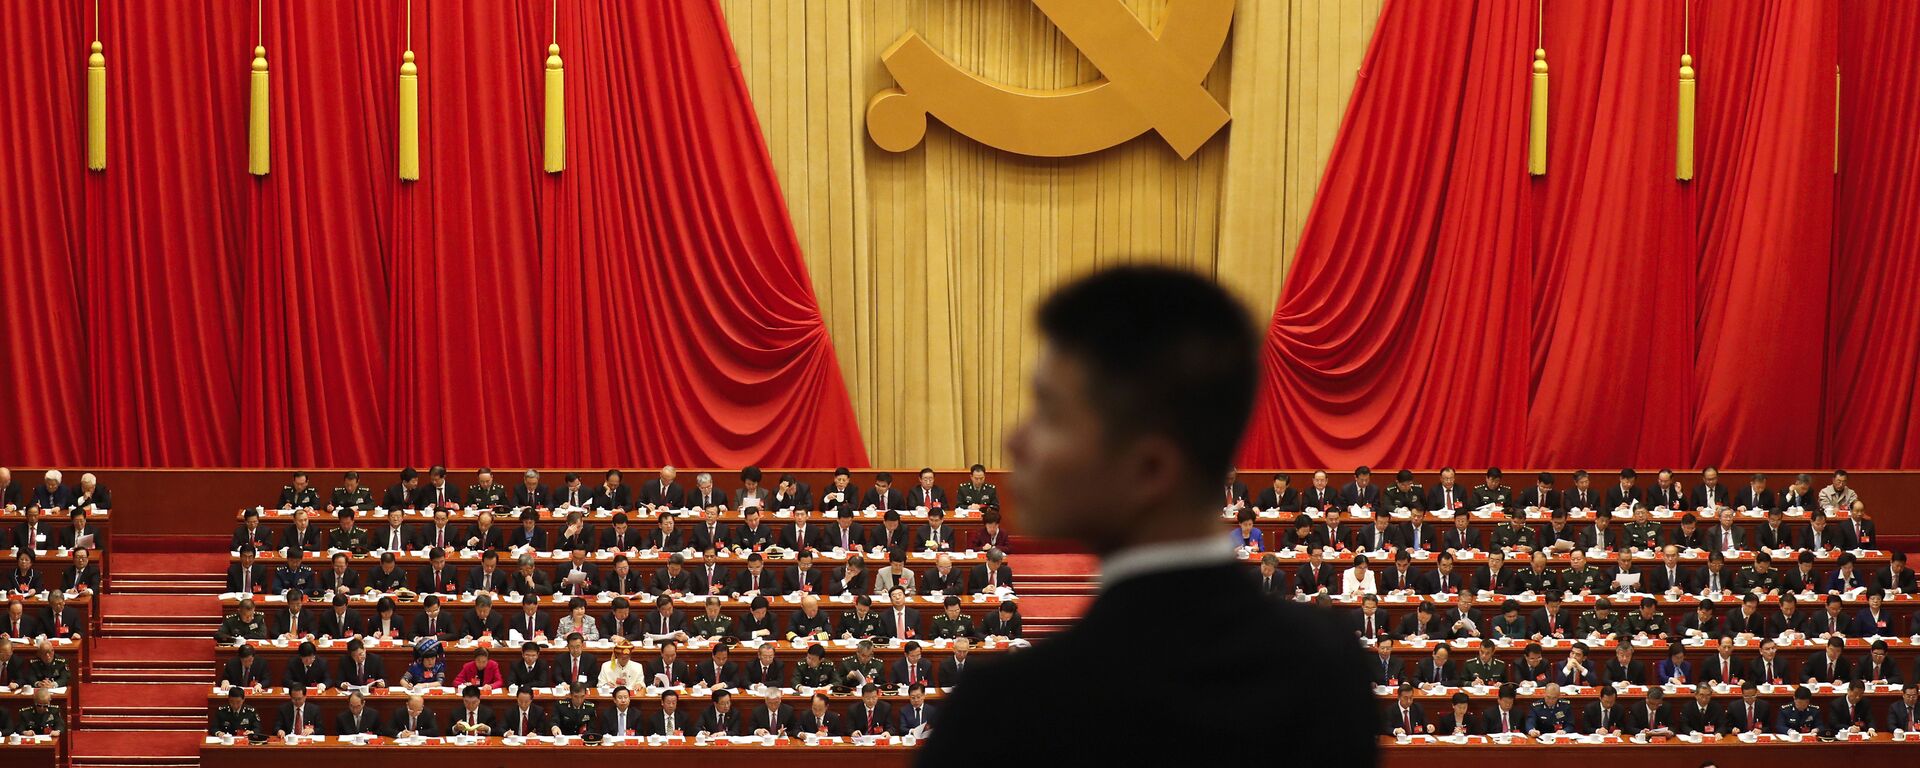 Vojnik stoji tokom govora kineskog predsednika Si Đinpinga na ceremoniji otvaranja 19. kongresa Komunističke partije u Pekingu - Sputnik Srbija, 1920, 02.09.2022